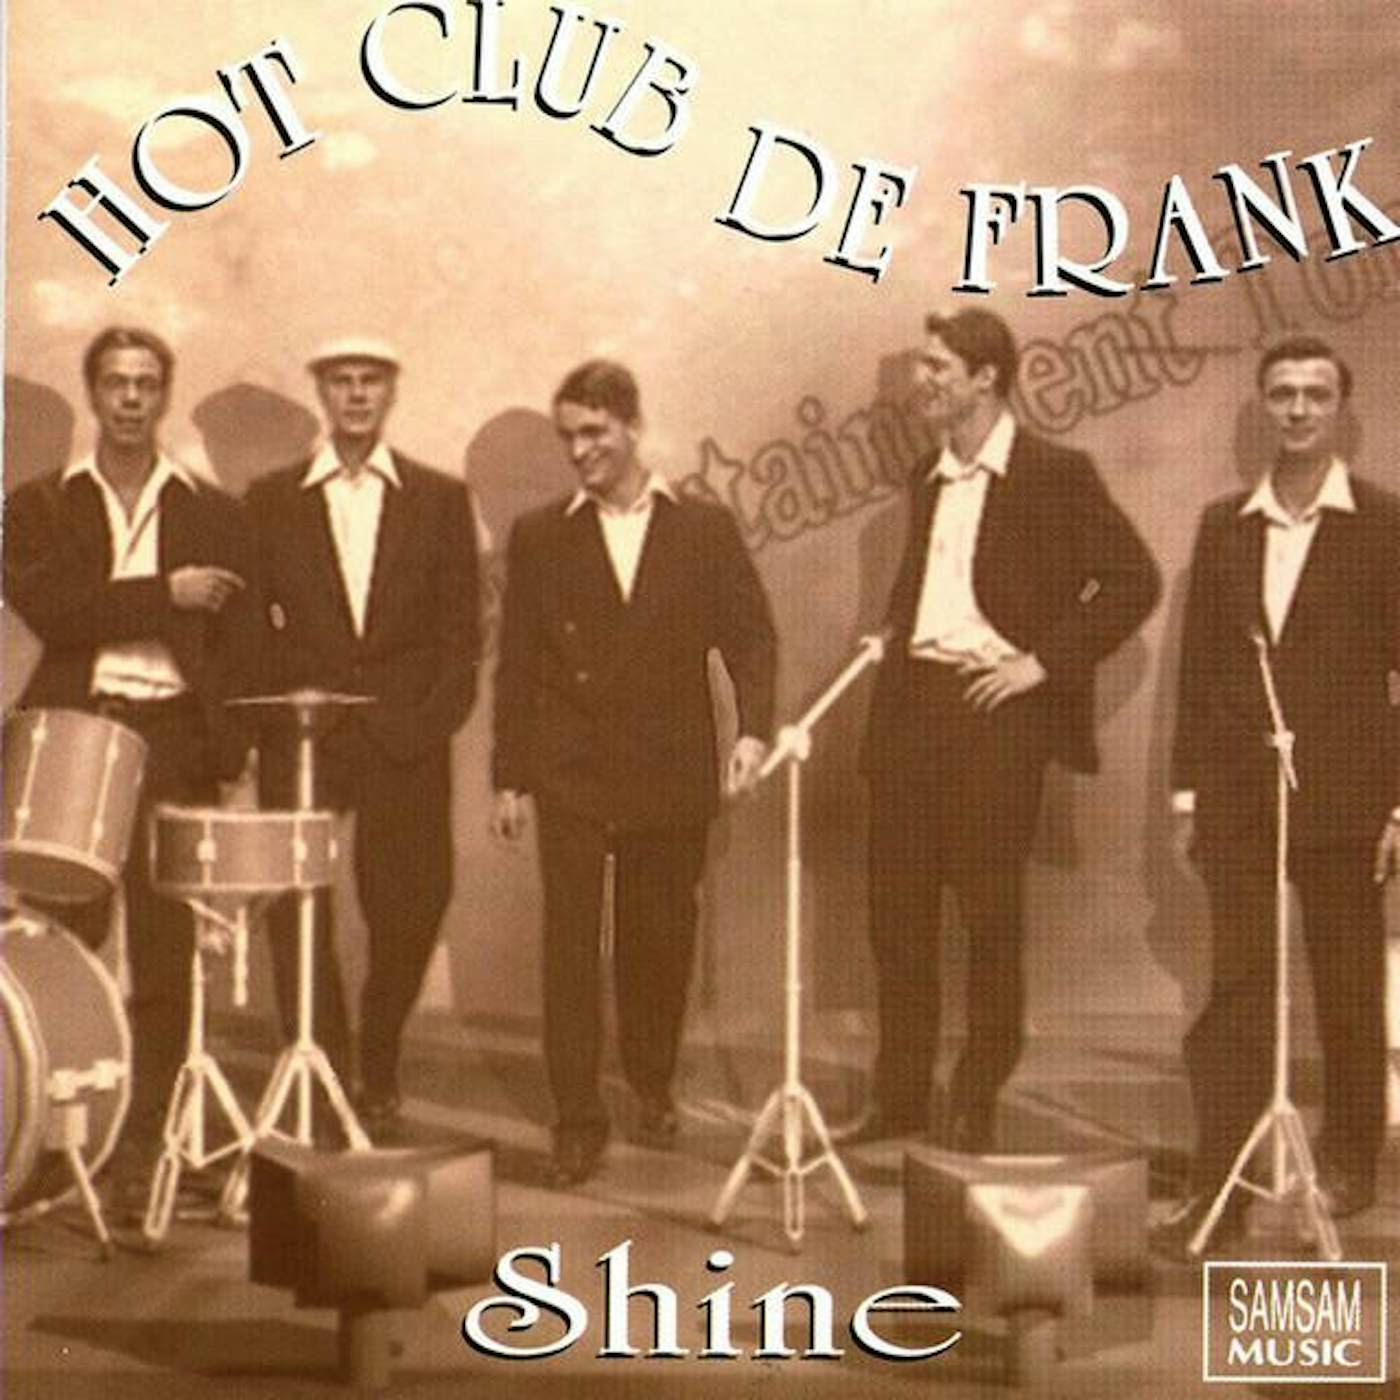 Hot Club De Frank